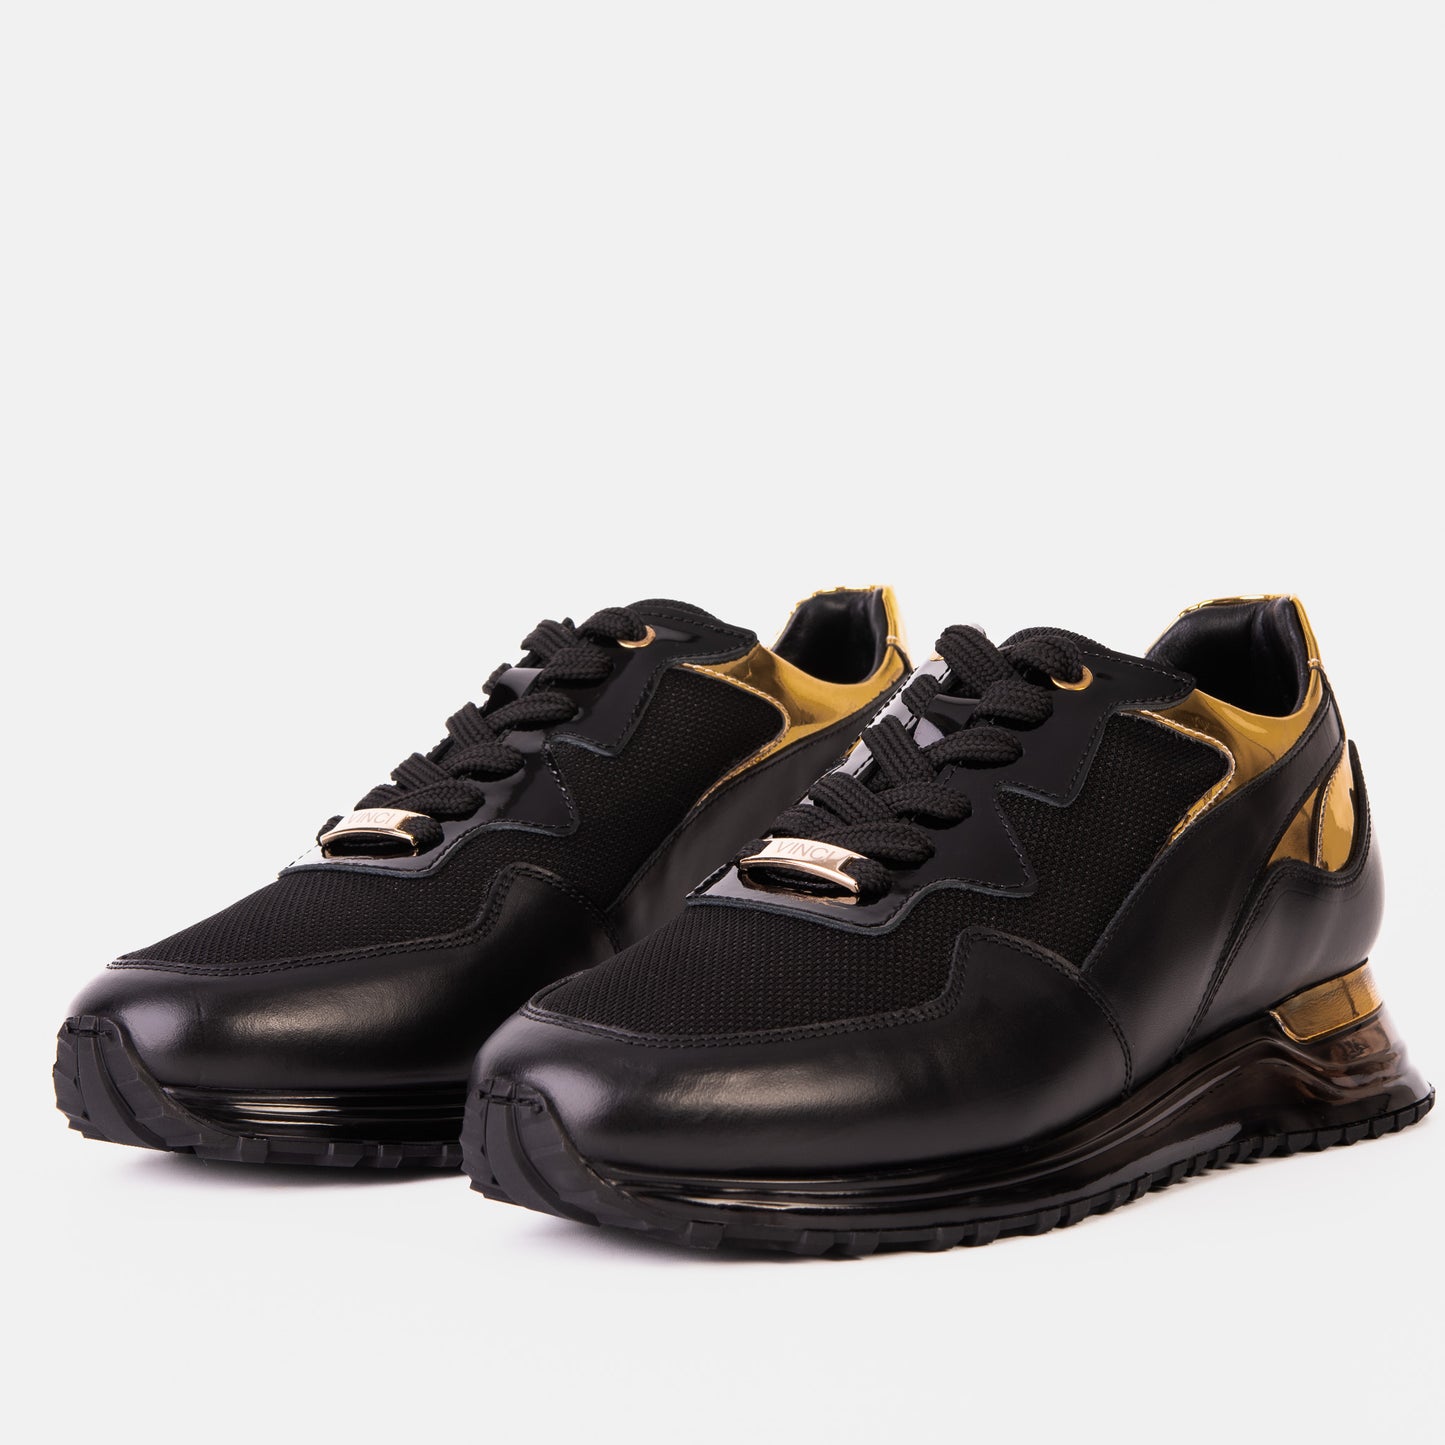 The Rialto Black & Gold Leather Men Sneaker